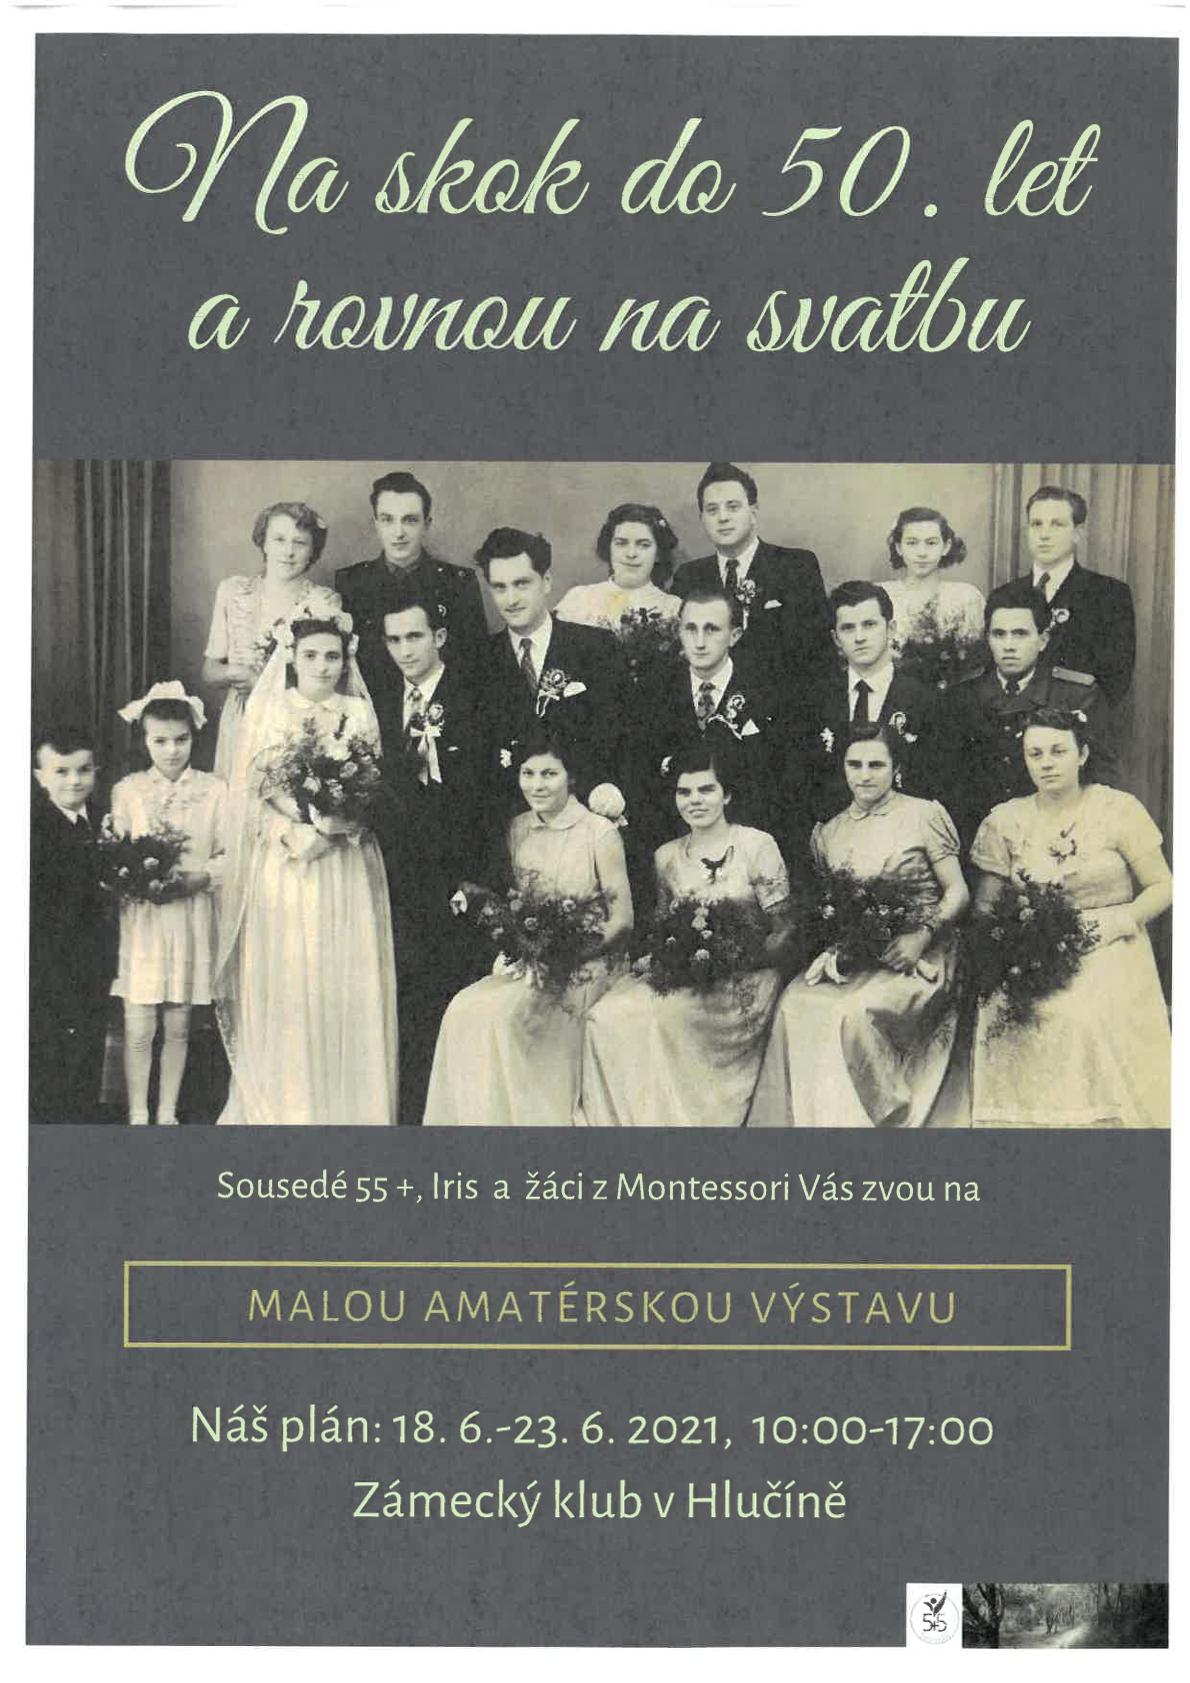 VÝSTAVA - Na skok do 50.let a rovnou na svatbu